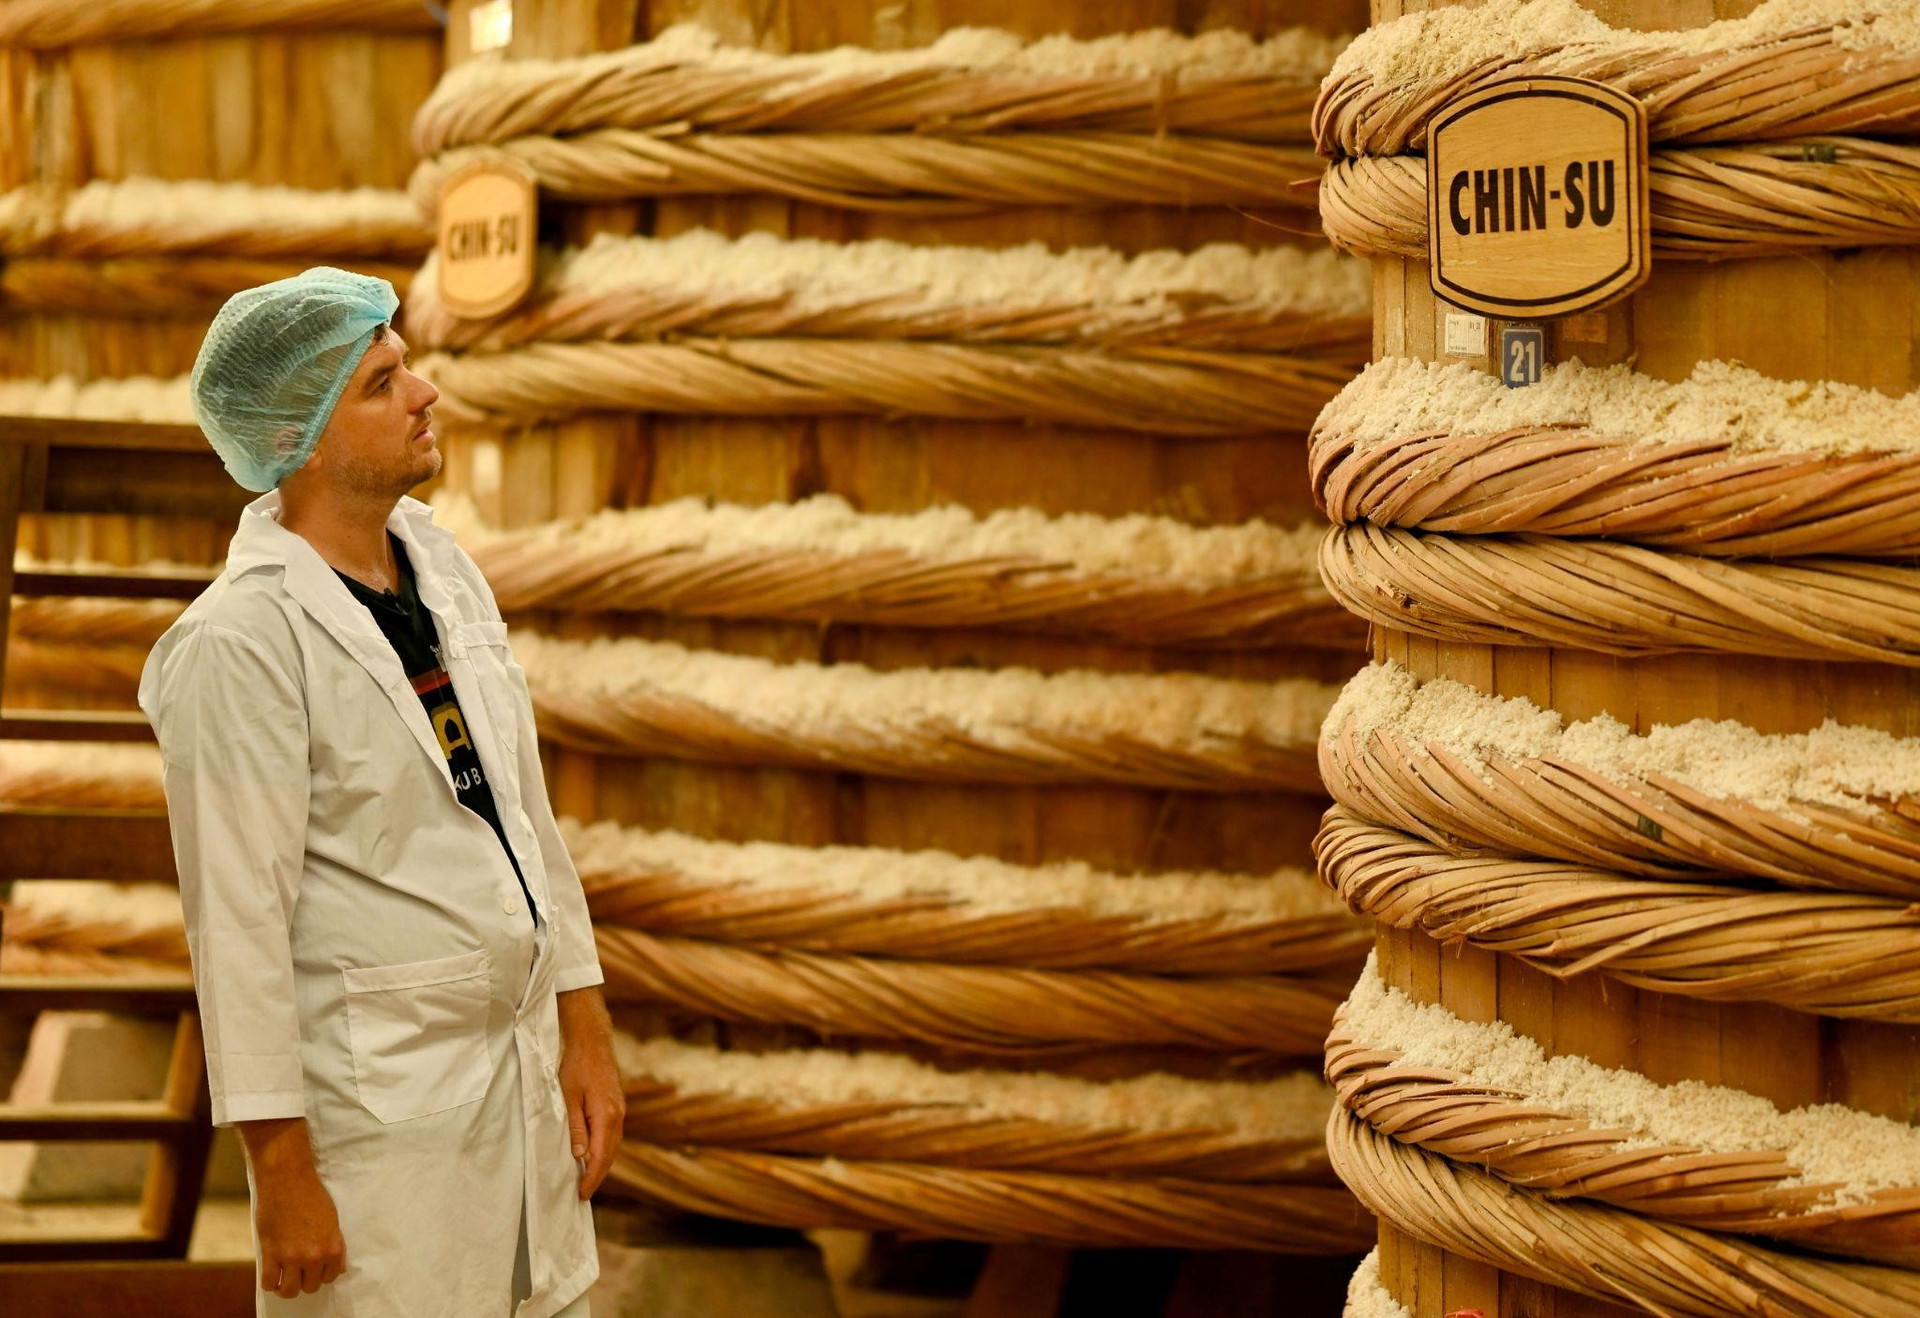 Chad Kubanoff ngẩn ngơ ở nhà thùng Chin-su Phú Quốc. Mỗi thùng gỗ này chứa  từ 13 - 15 tấn cá cơm.